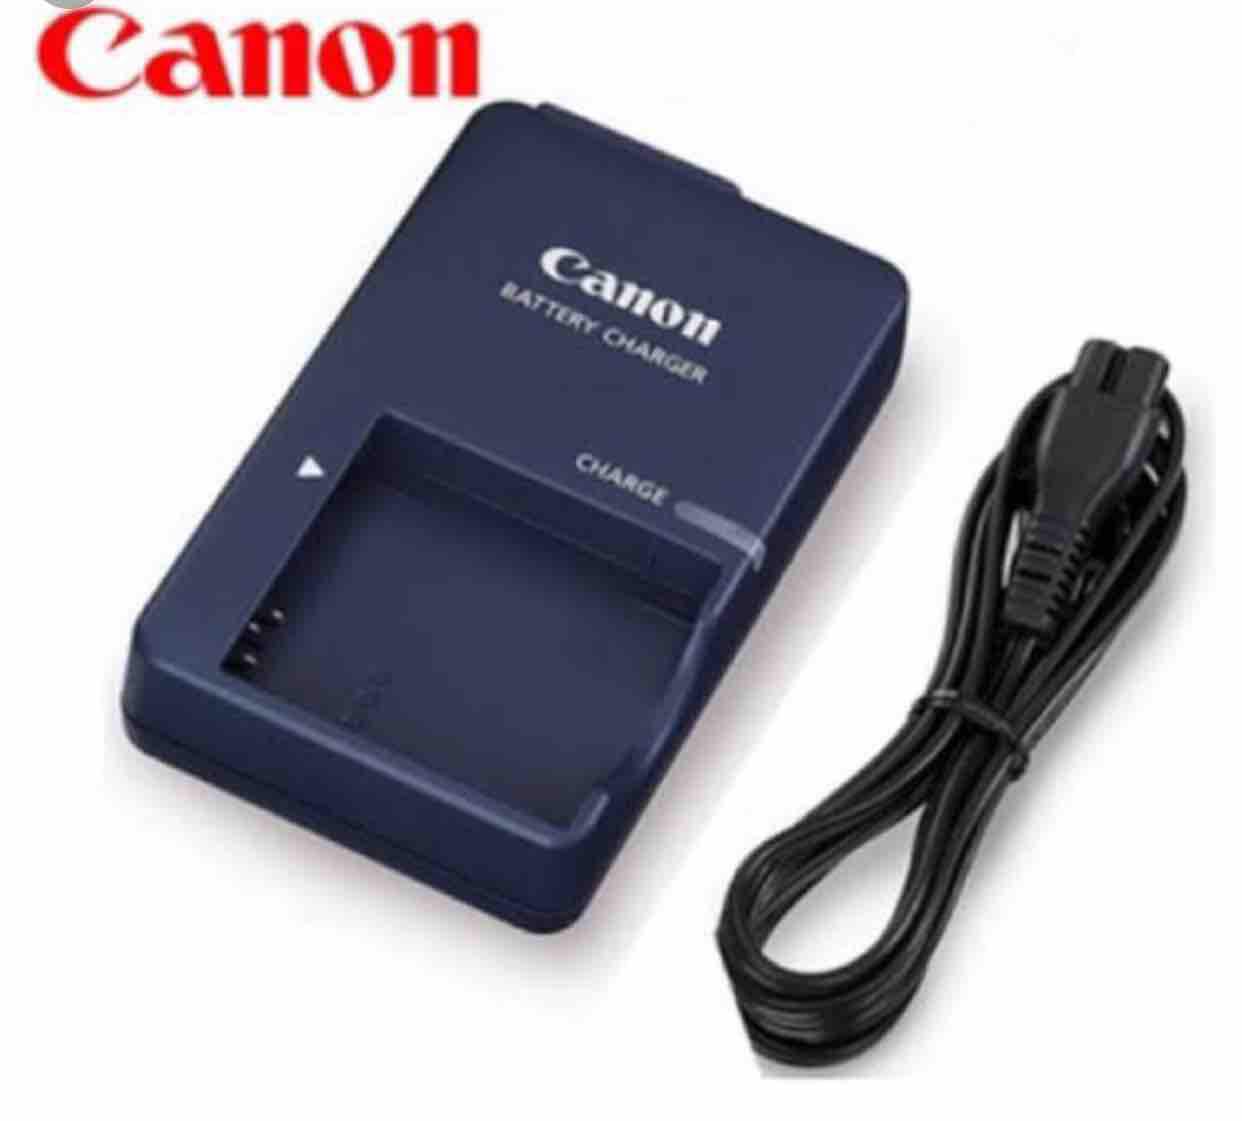 USB Charger Cable Cord for Canon IXUS 430 IXUS 500 IXUS 700 IXUS 750 IXUS 800 IS 